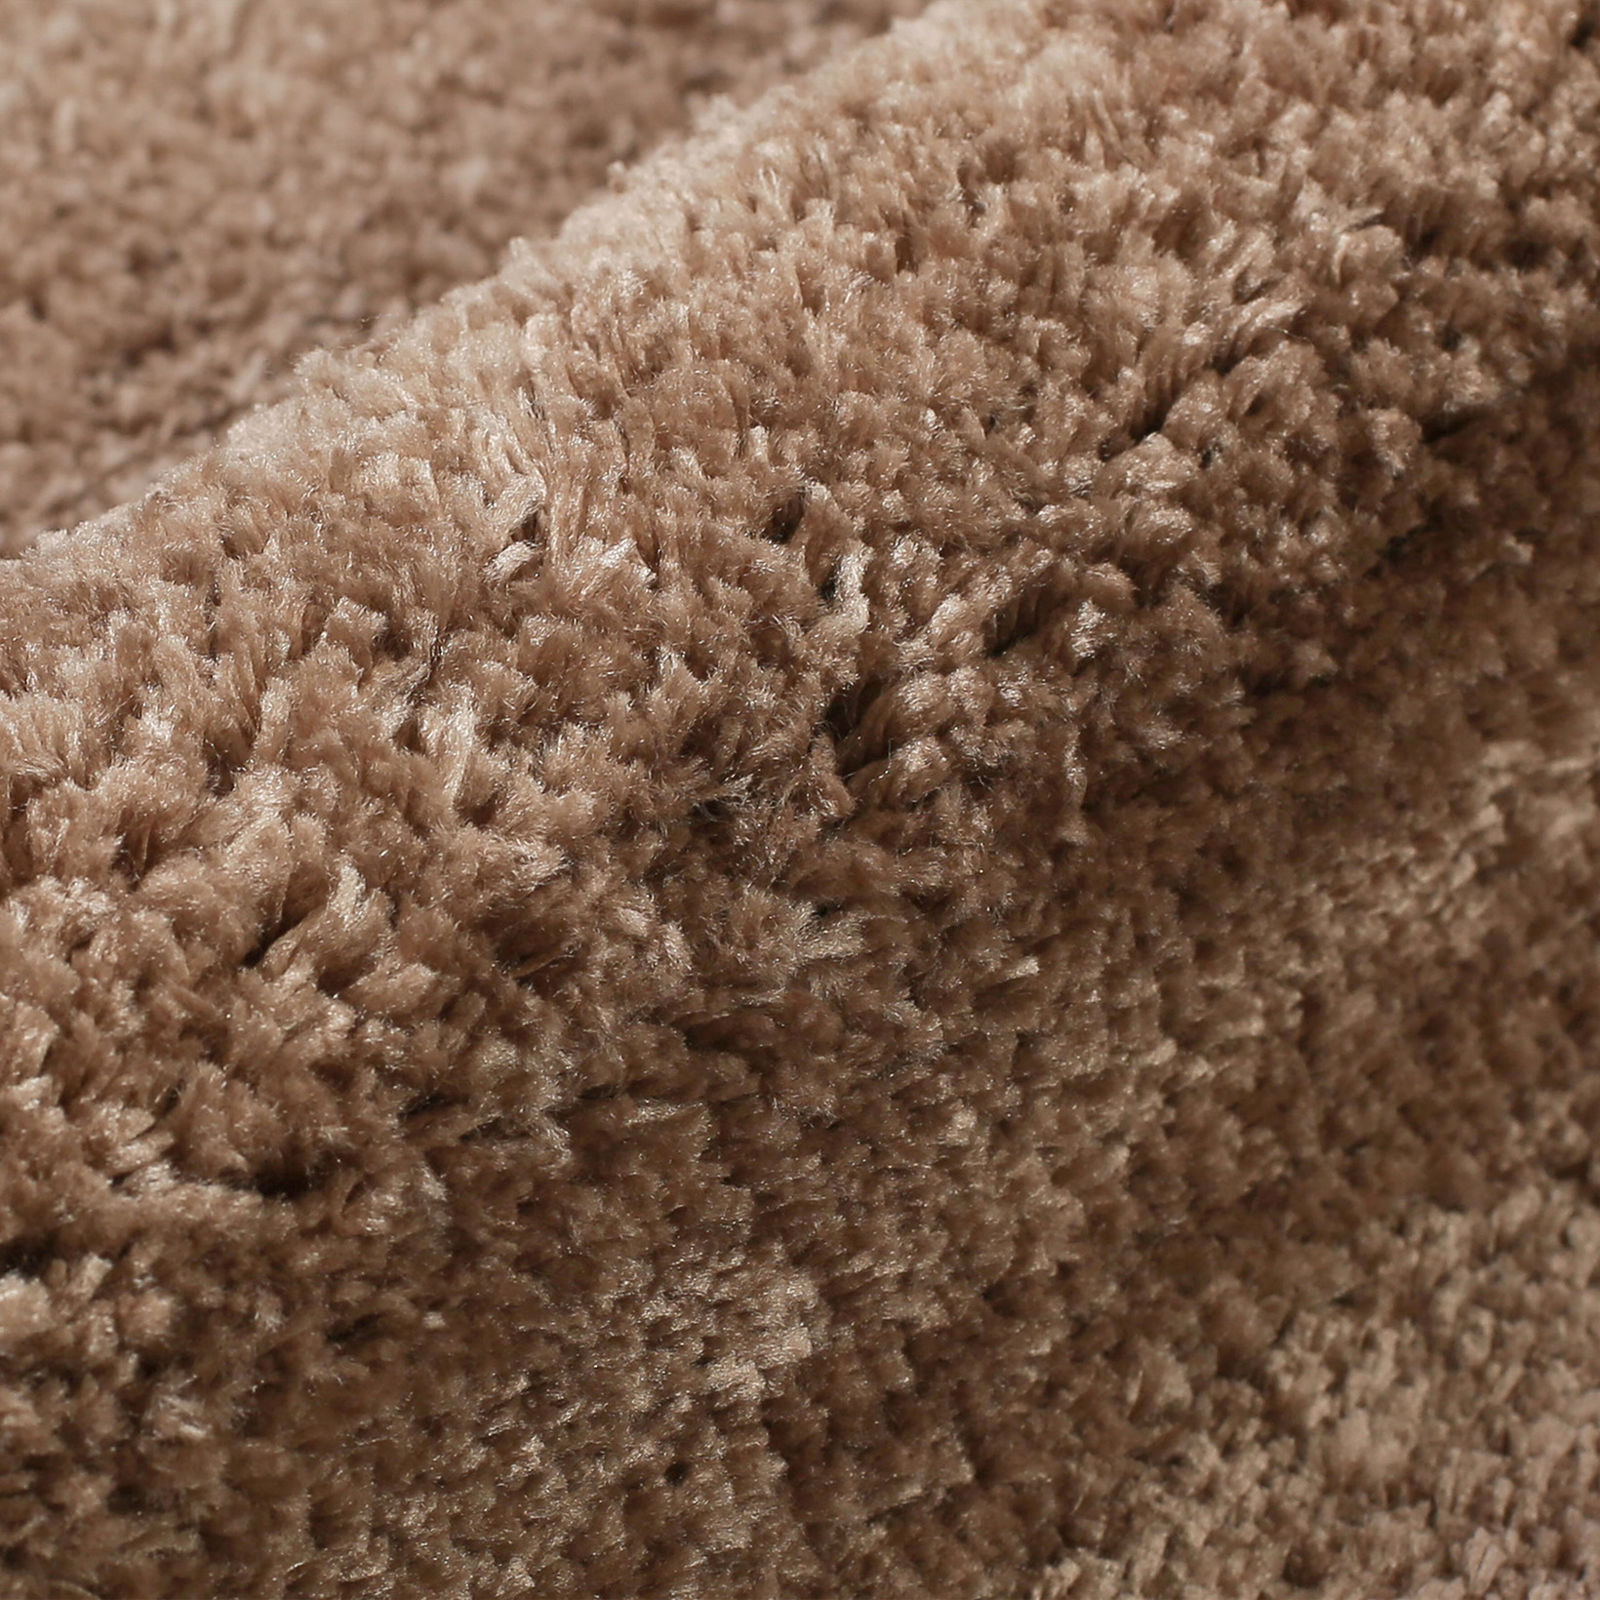 Extra sűrűn szőtt fürdőszobai szőnyeg - kávészínű 60x100 cm